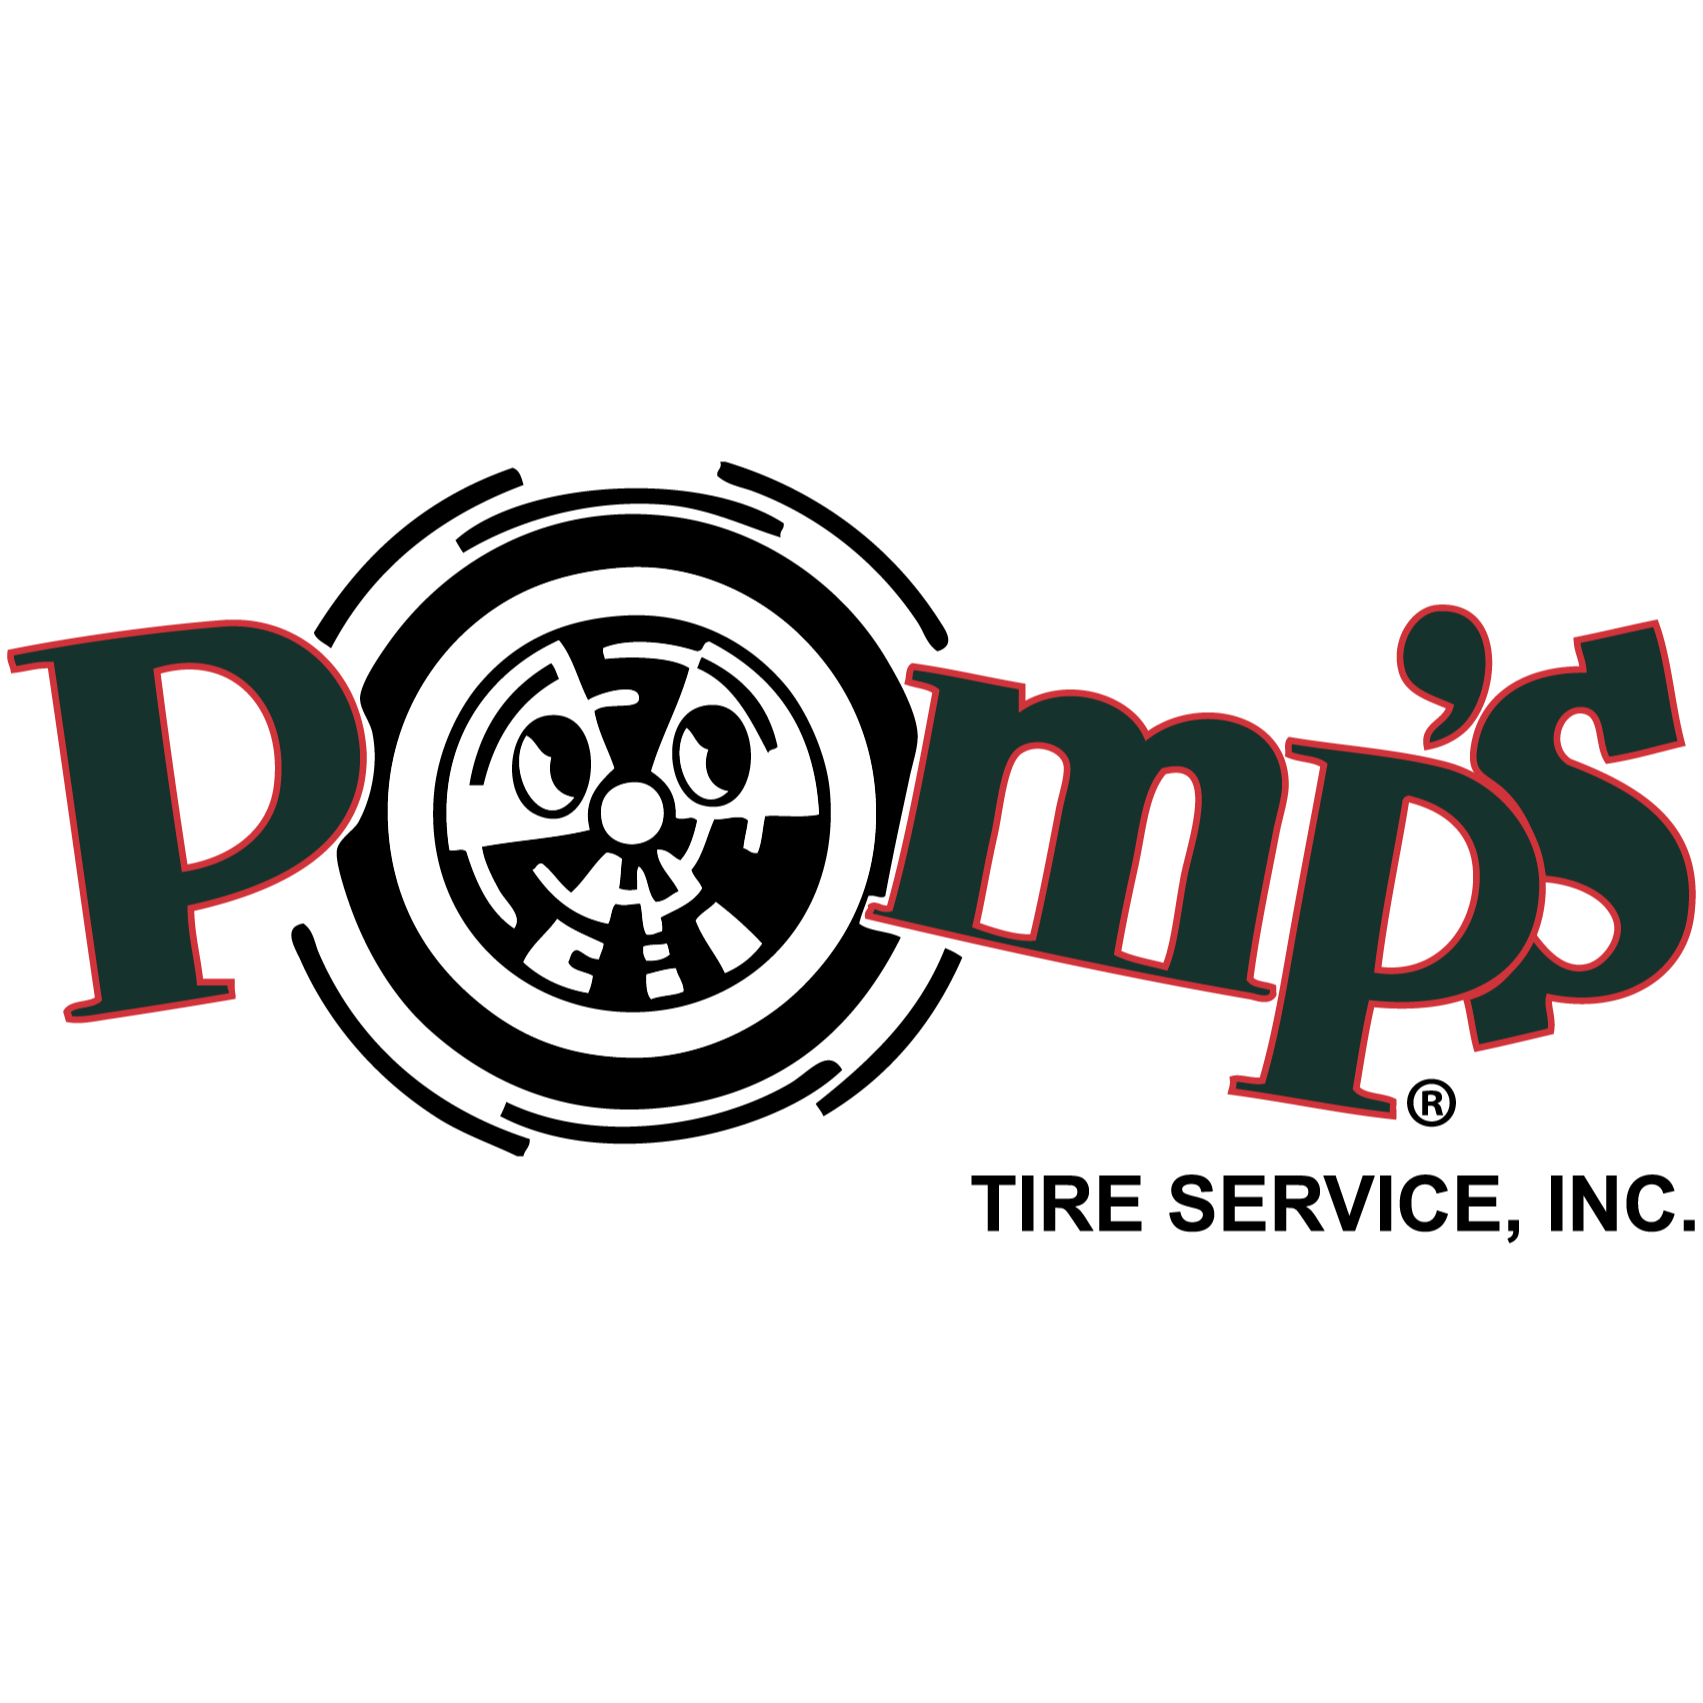 Pomp's Tire Service - Sioux City, IA 51111 - (712)277-2199 | ShowMeLocal.com